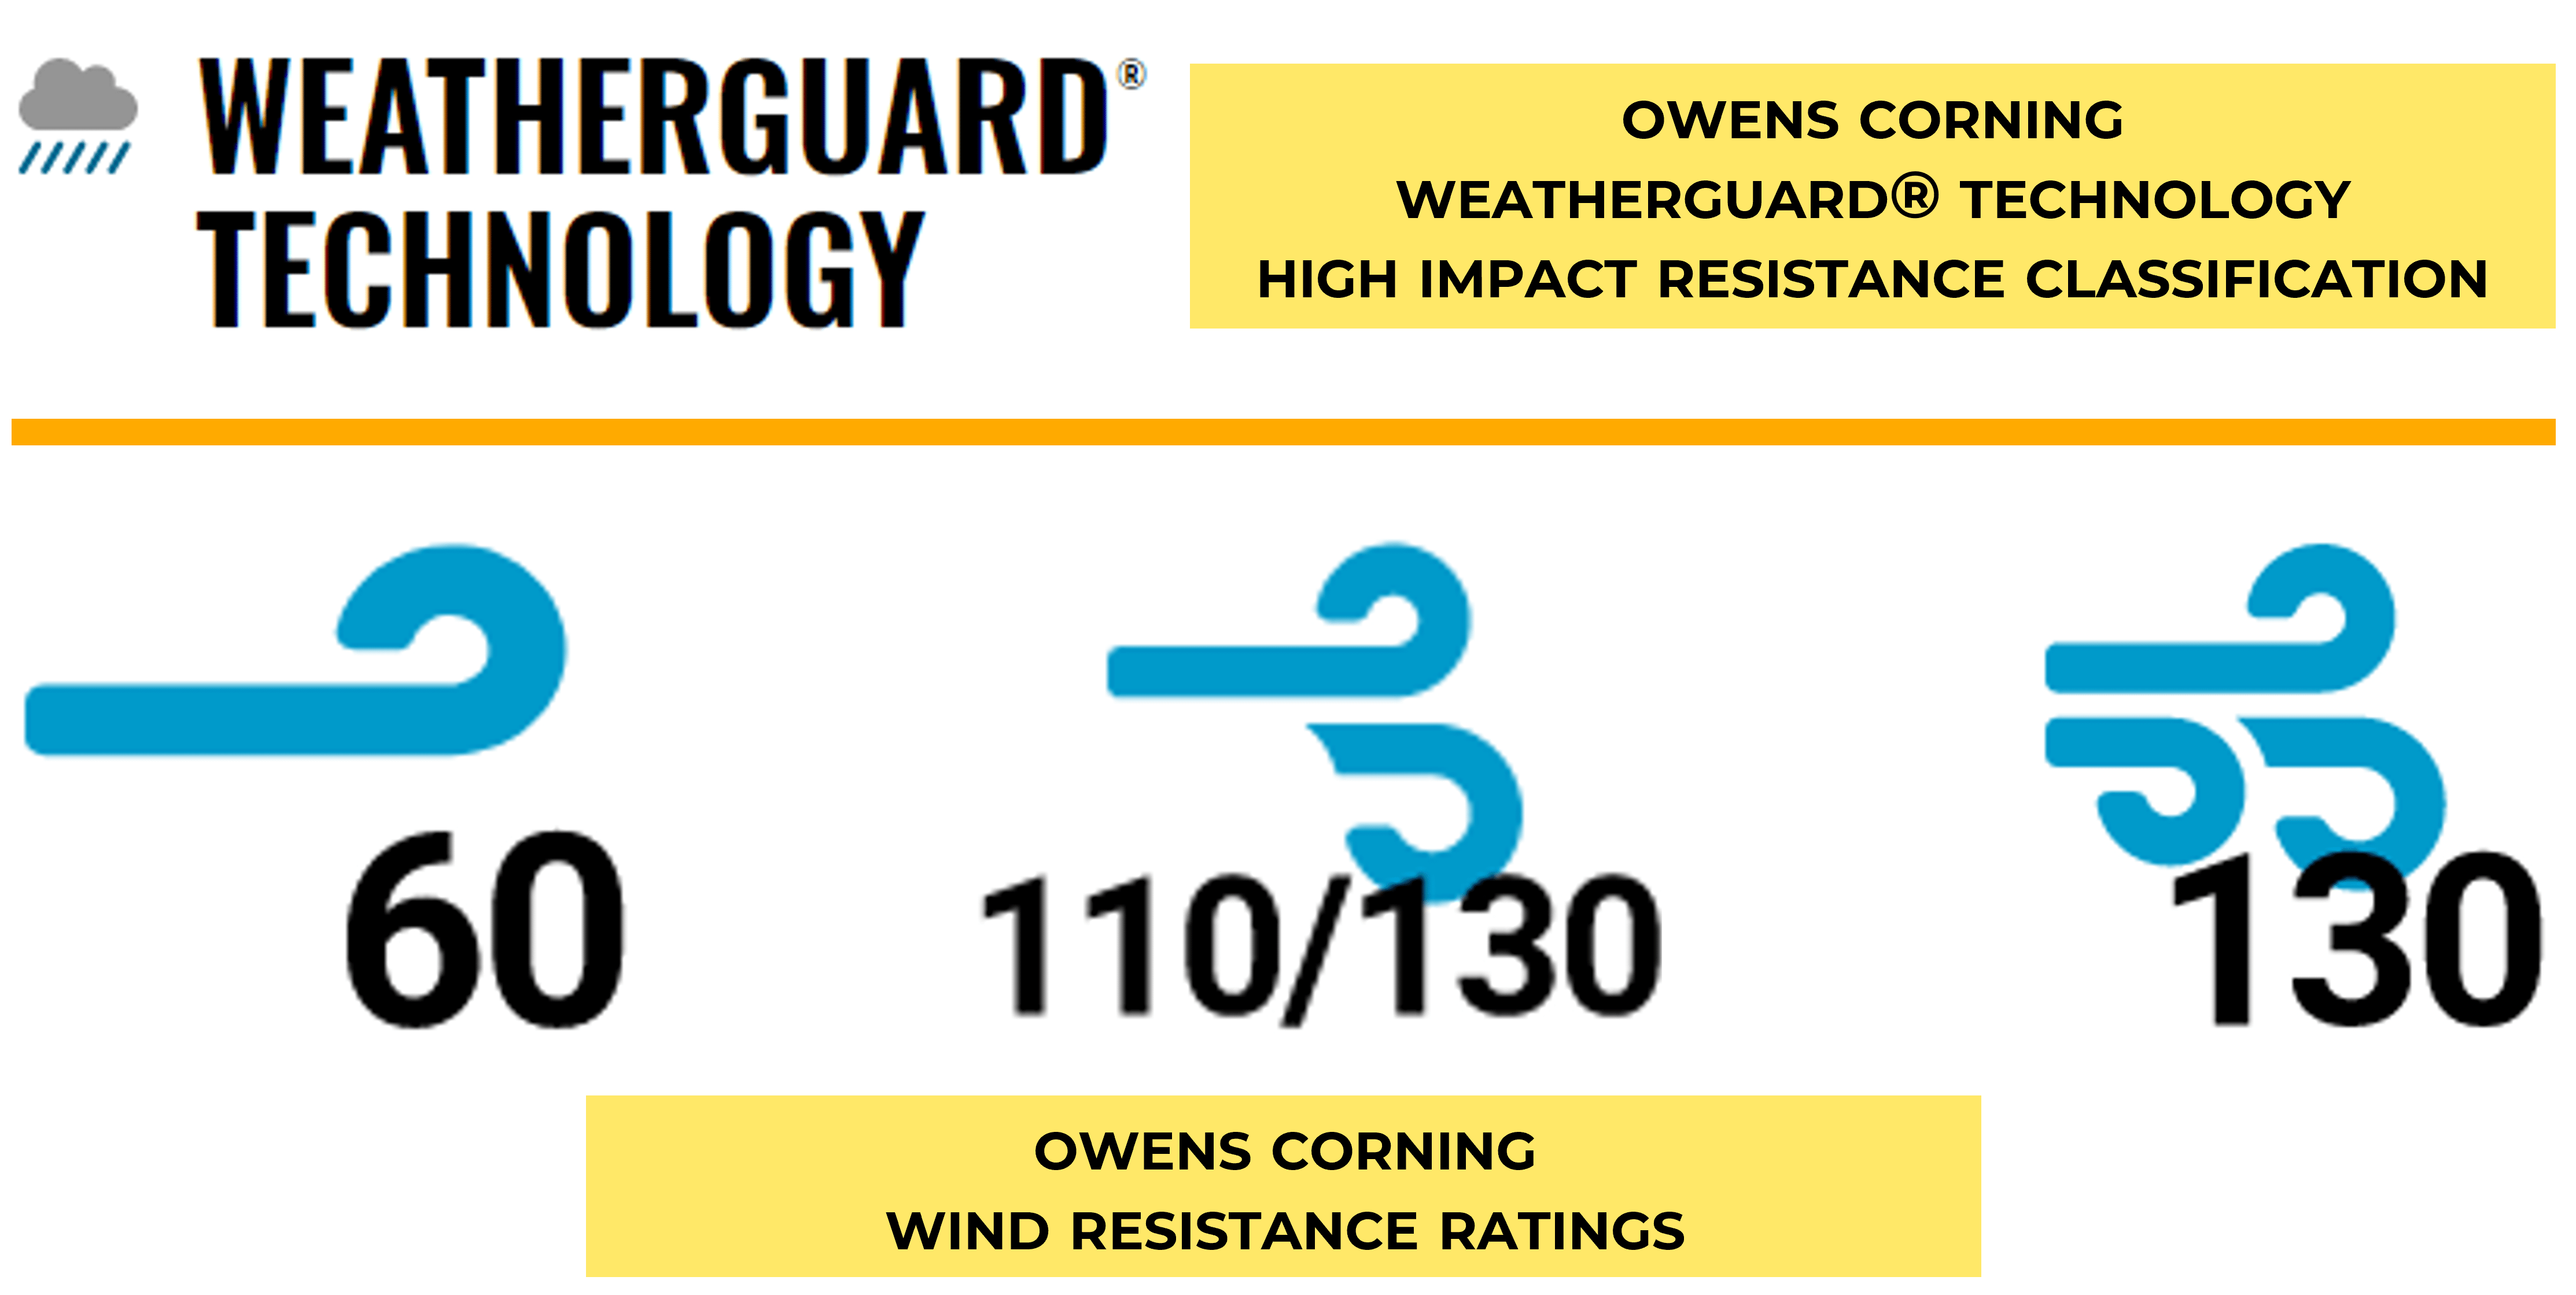 Owens Corning Weatherguard Technology